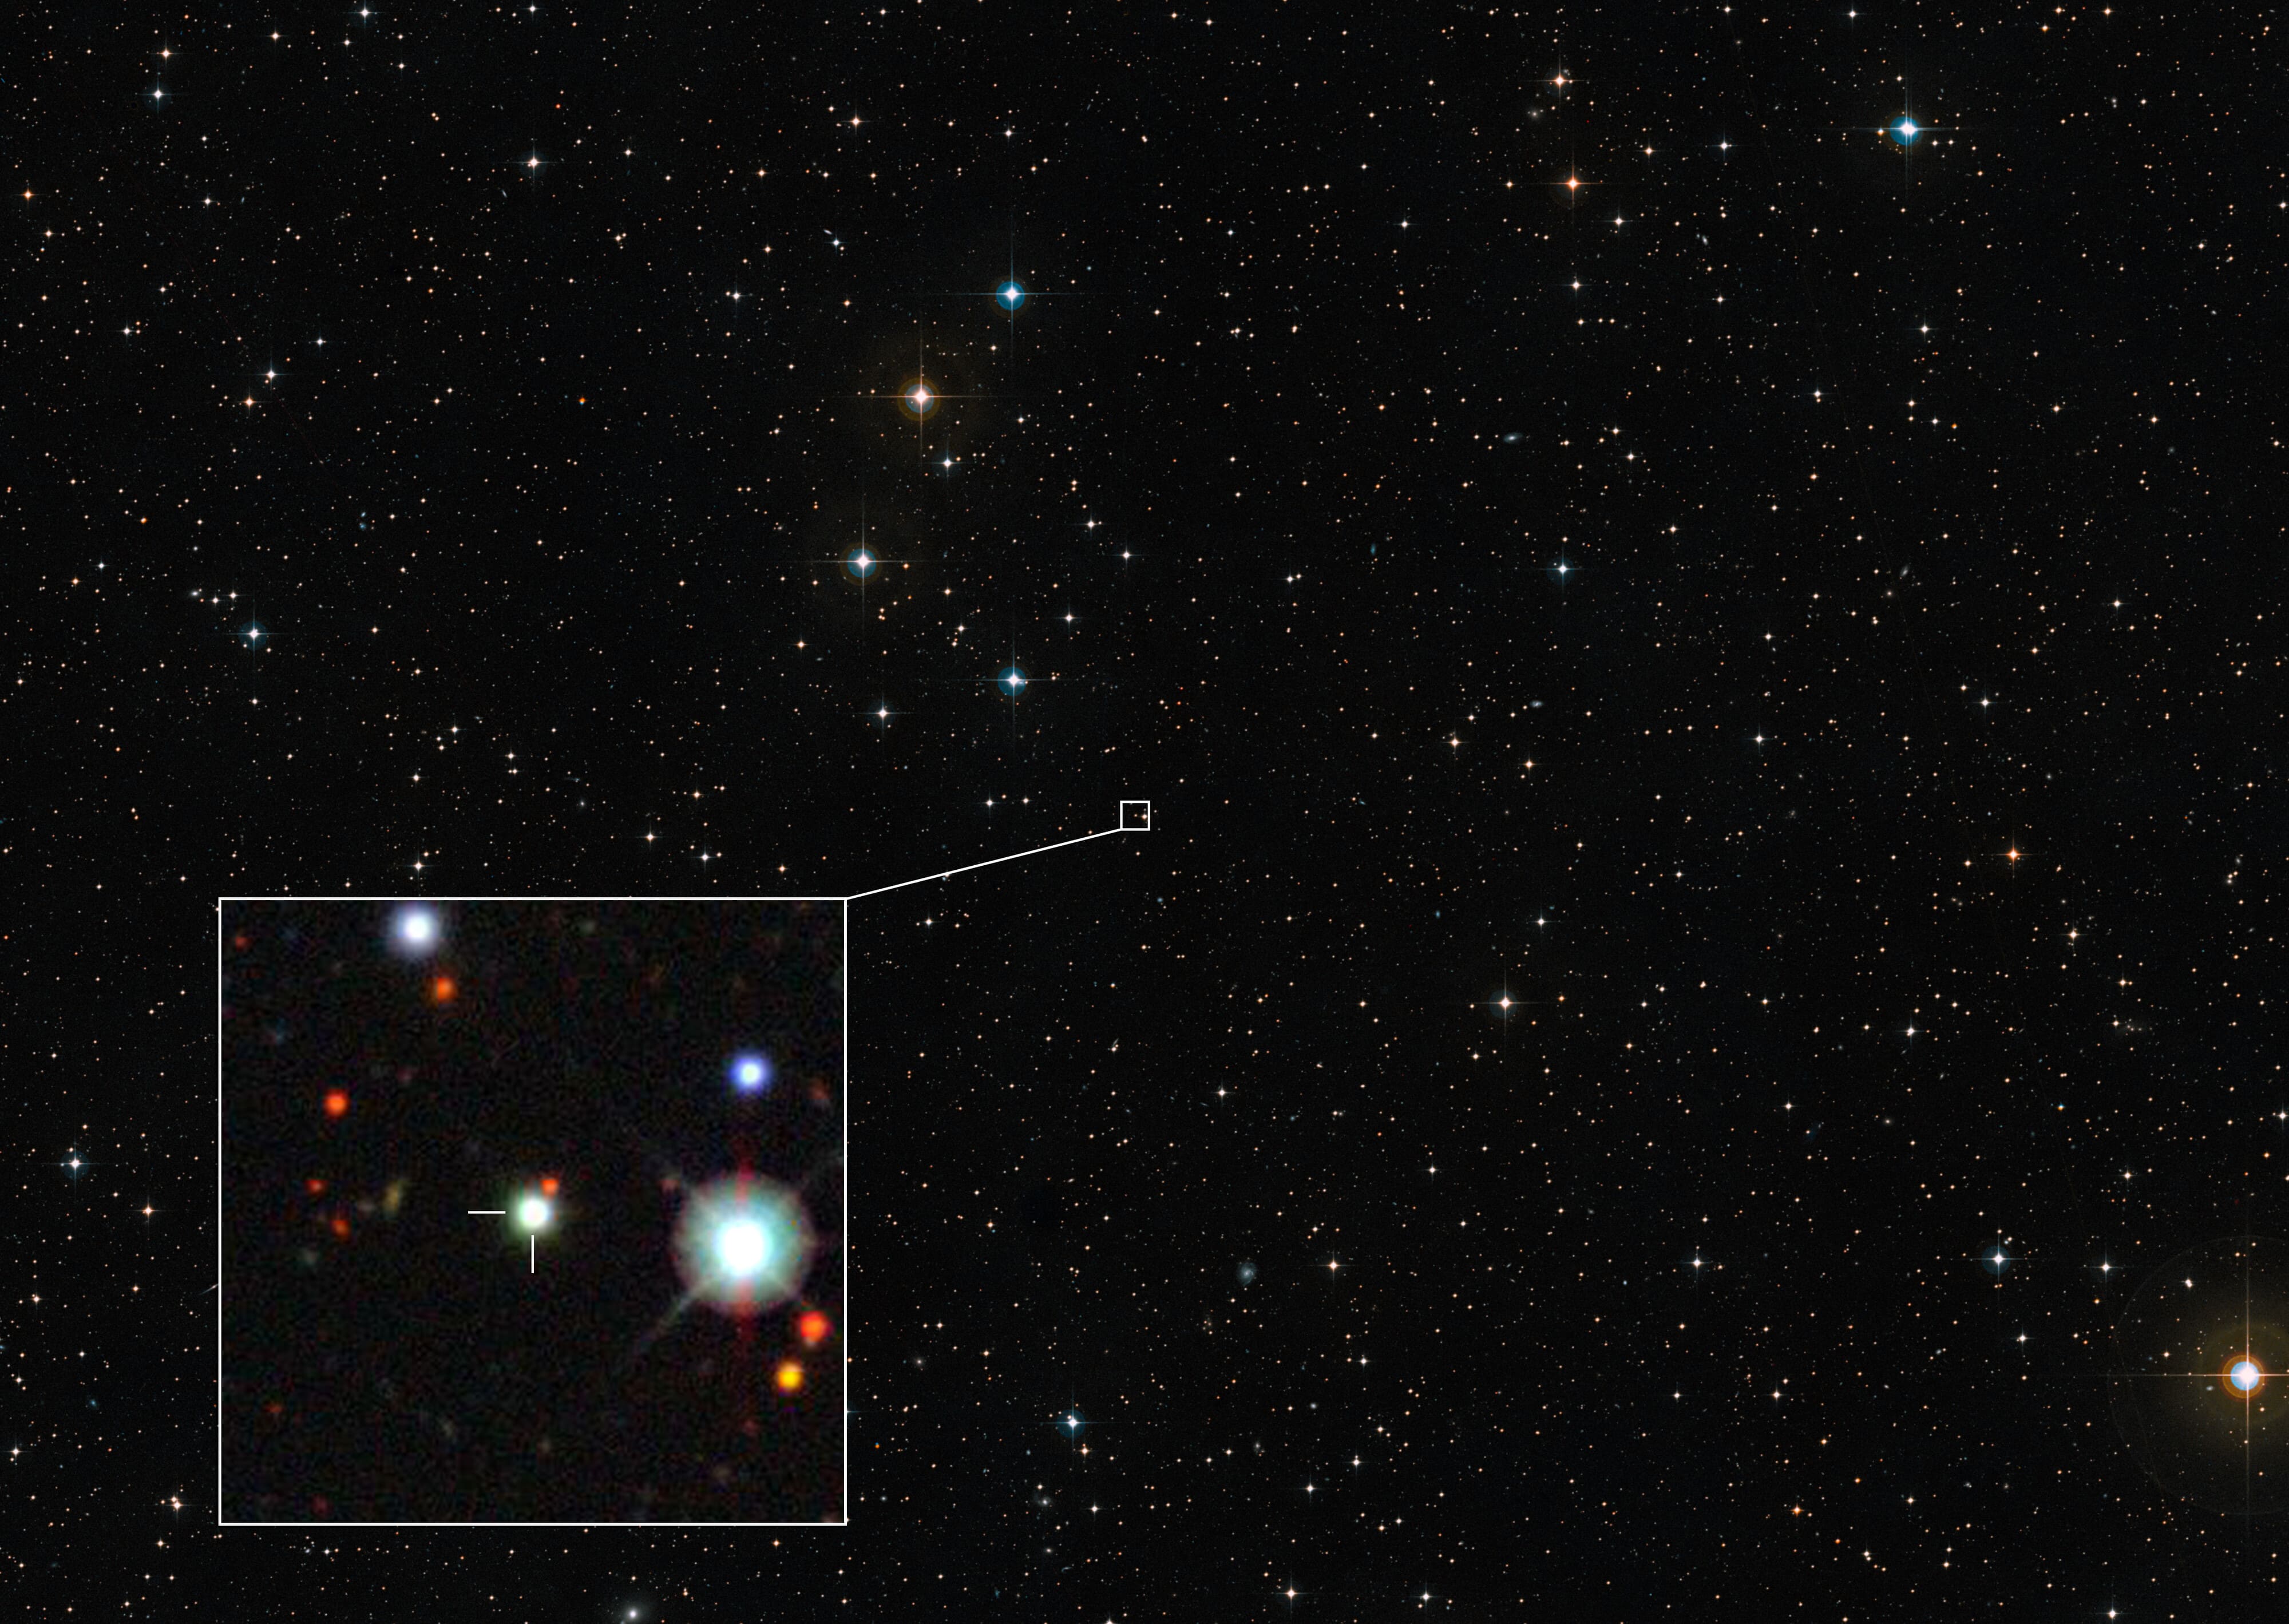 Используя Очень большой телескоп (VLT) Европейской Южной обсерватории (ESO), астрономы идентифицировали рекордный квазар J0529-4351, самый яркий из когда-либо наблюдавшихся